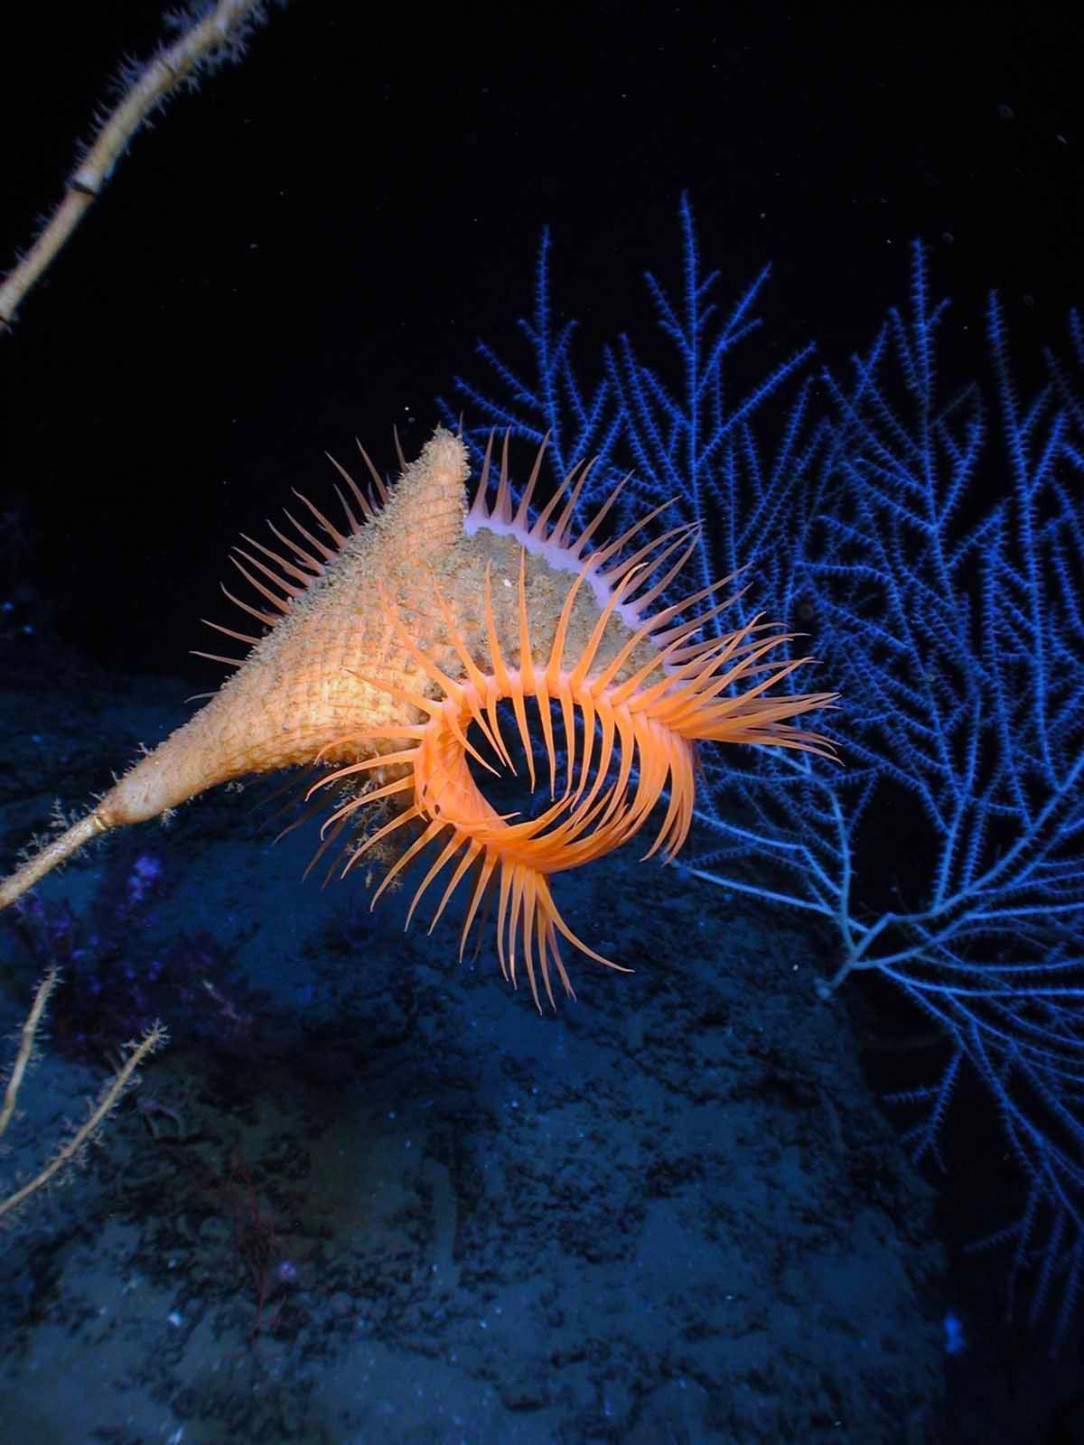 The unique and bright venus flytrap anemone